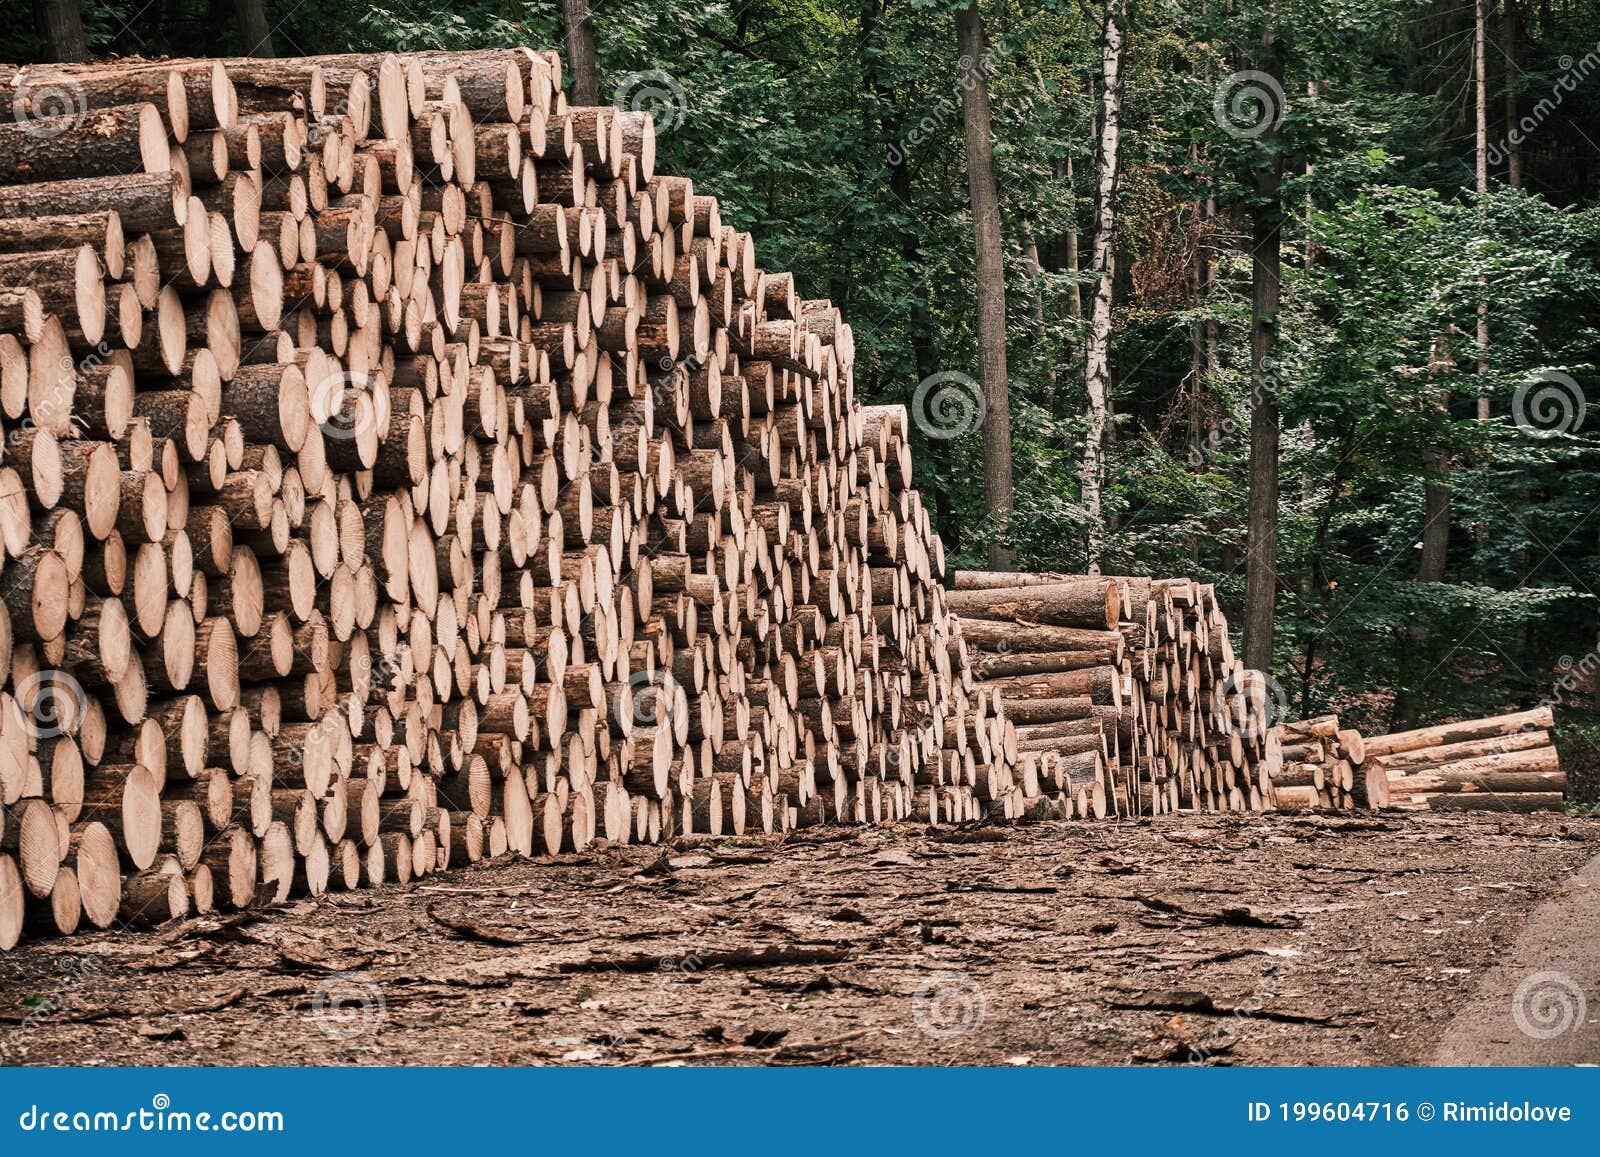 从原木到成品，木材加工需要经过哪些流程？ - 知乎